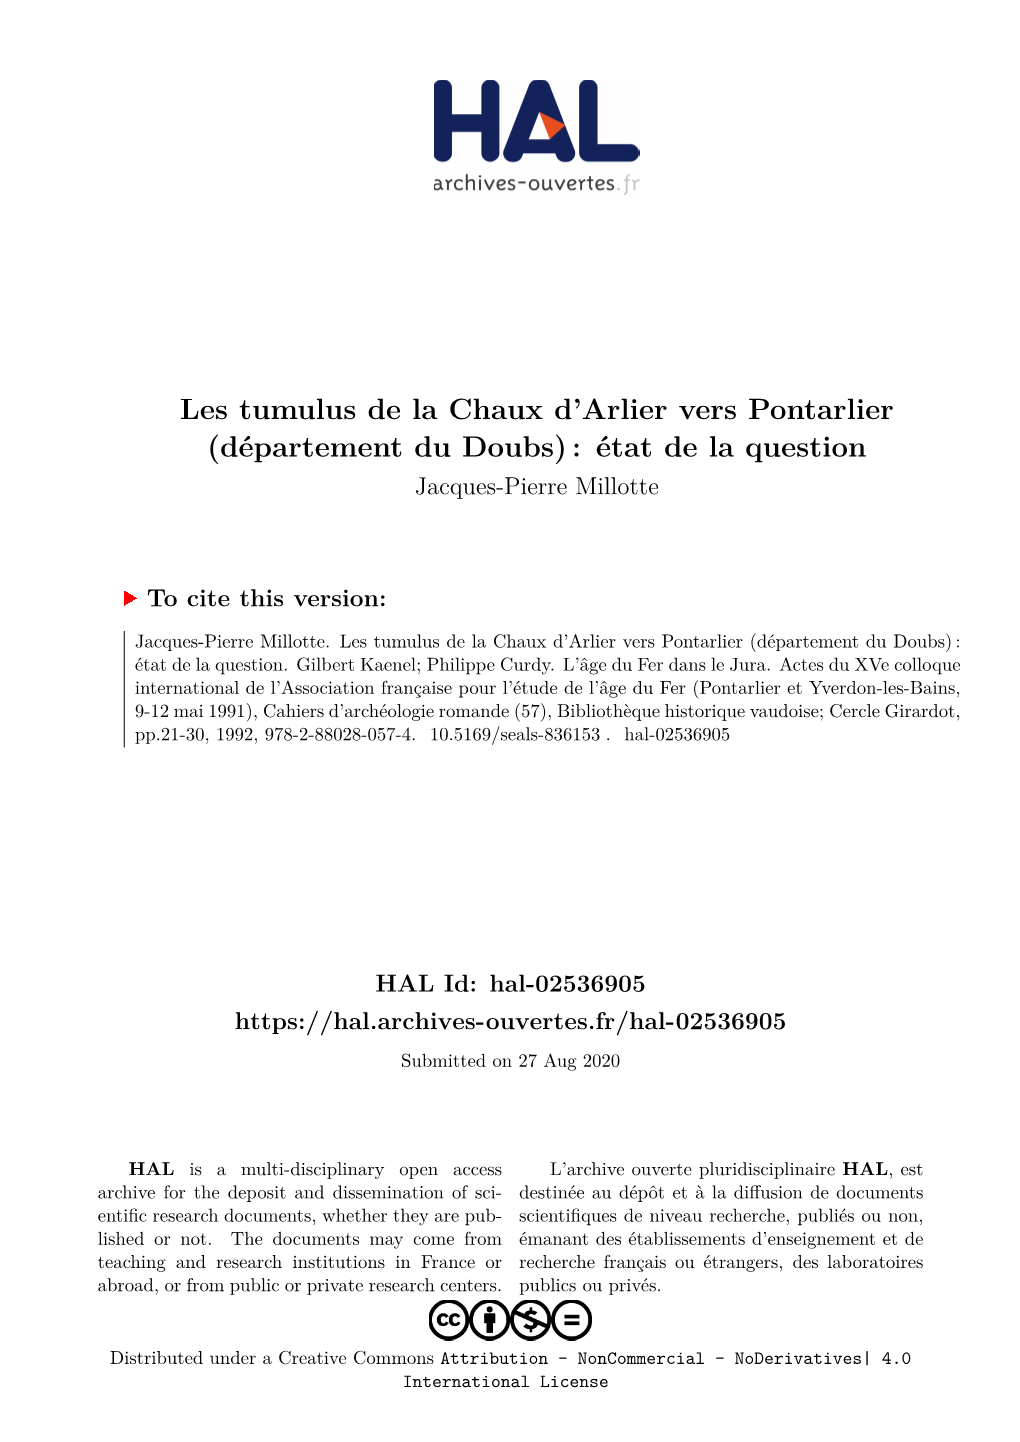 Les Tumulus De La Chaux D'arlier Vers Pontarlier (Département Du Doubs